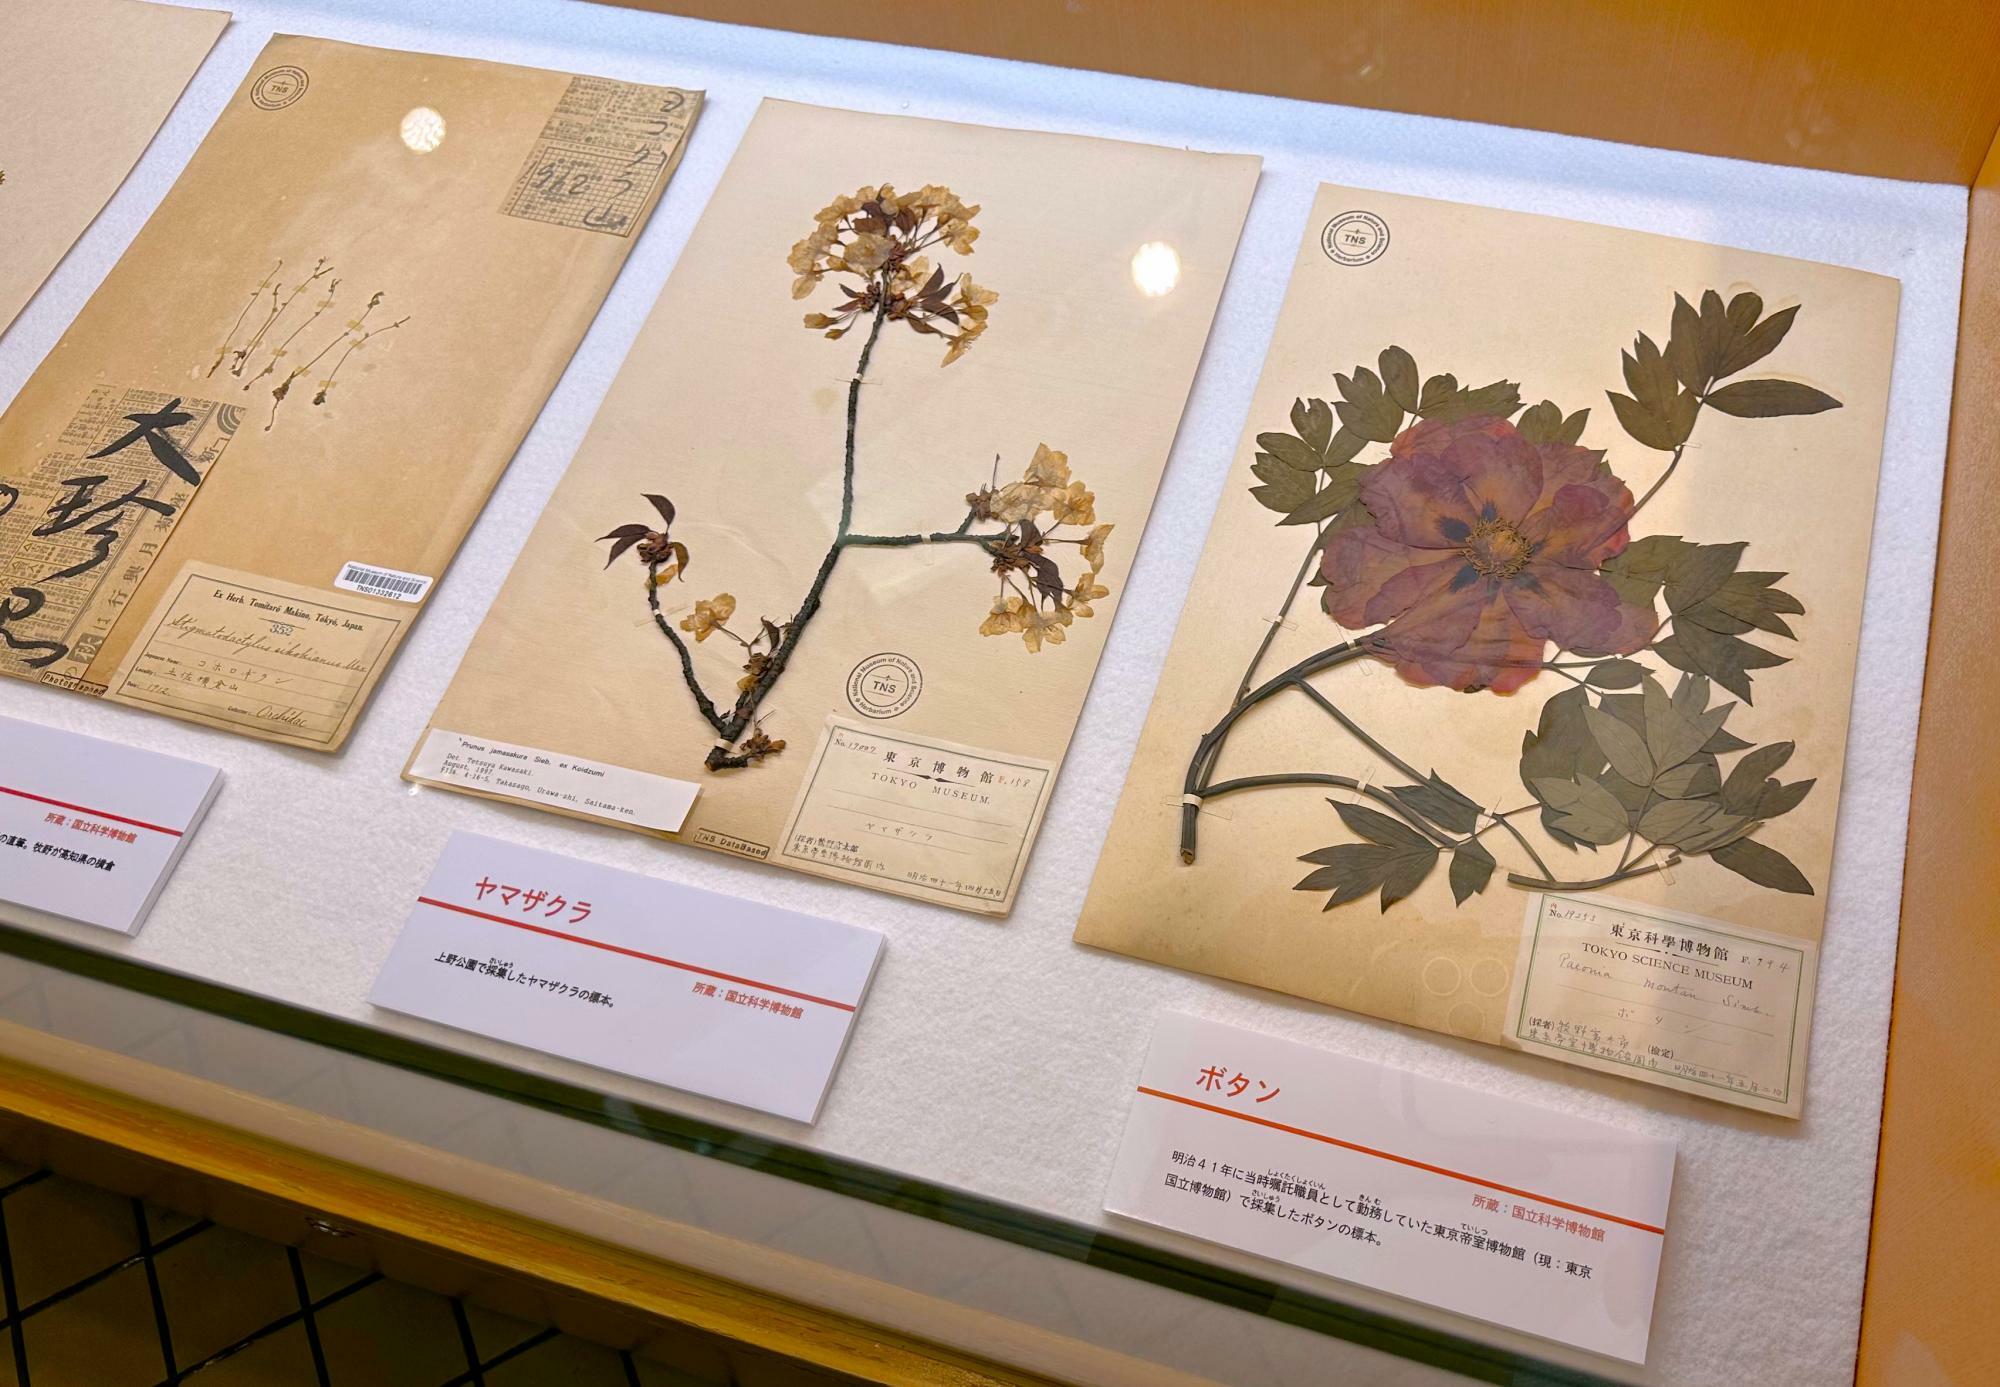 ヤマザクラの標本は上野公園で、ボタンの標本は東京帝室博物館（現︓東京国立博物館）で採集